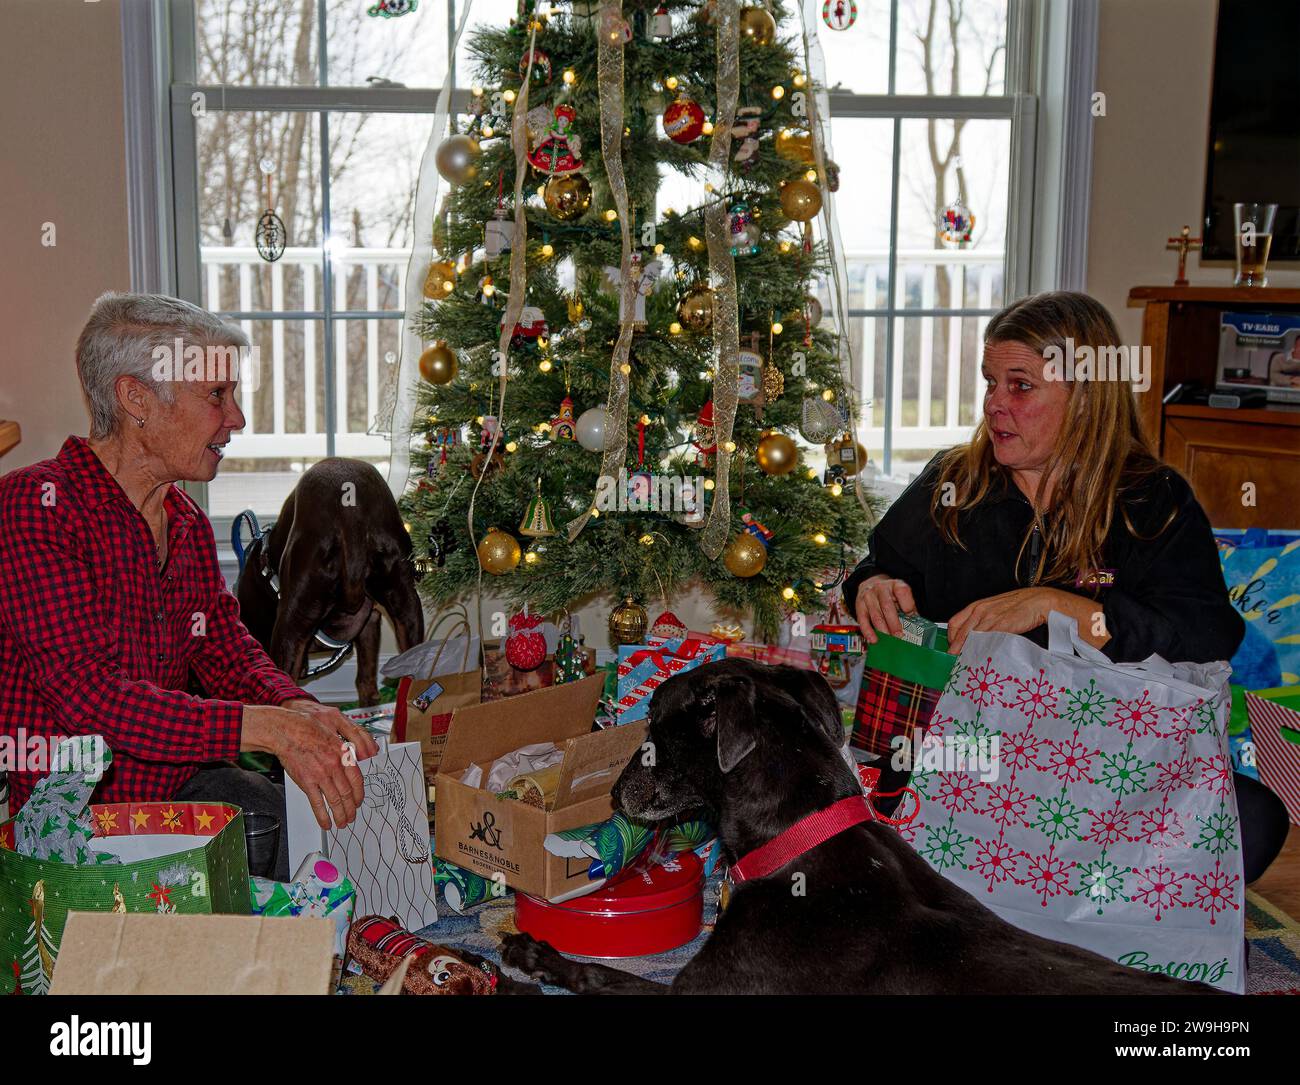 Natale in famiglia, apertura regalo, 2 donne, attività, divertimento, interazione, persone, felice, eccitazione, vacanza, 2 cani, albero decorato, MR, PR Foto Stock